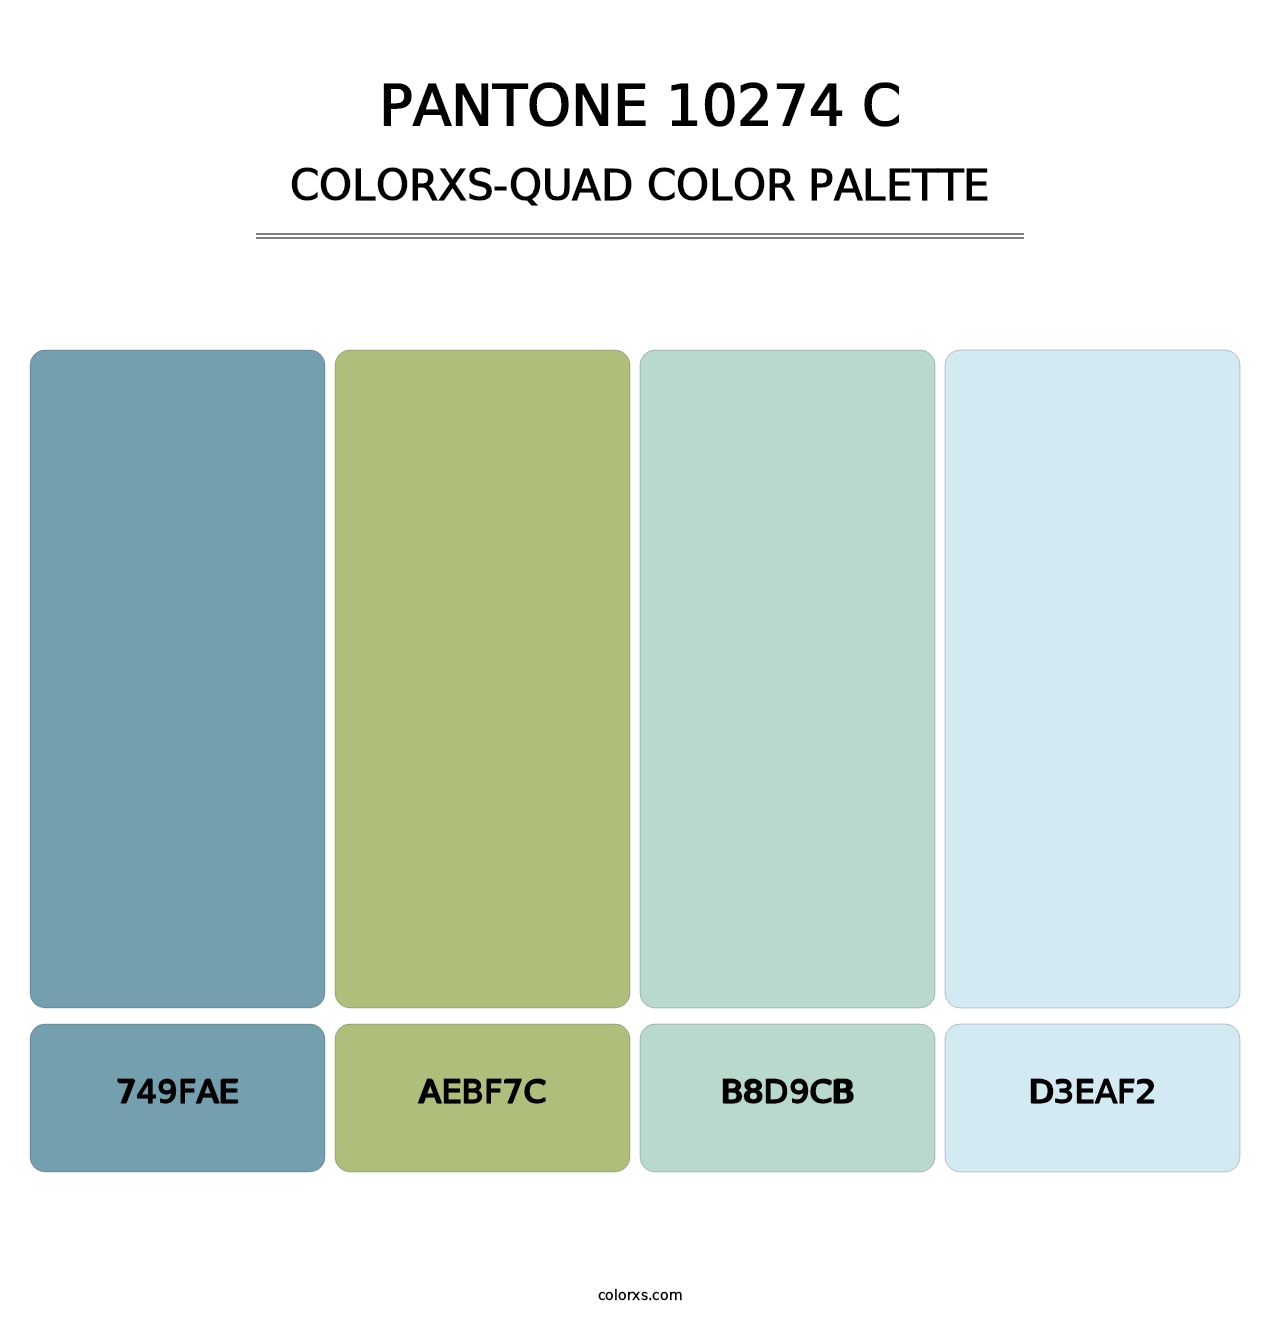 PANTONE 10274 C - Colorxs Quad Palette